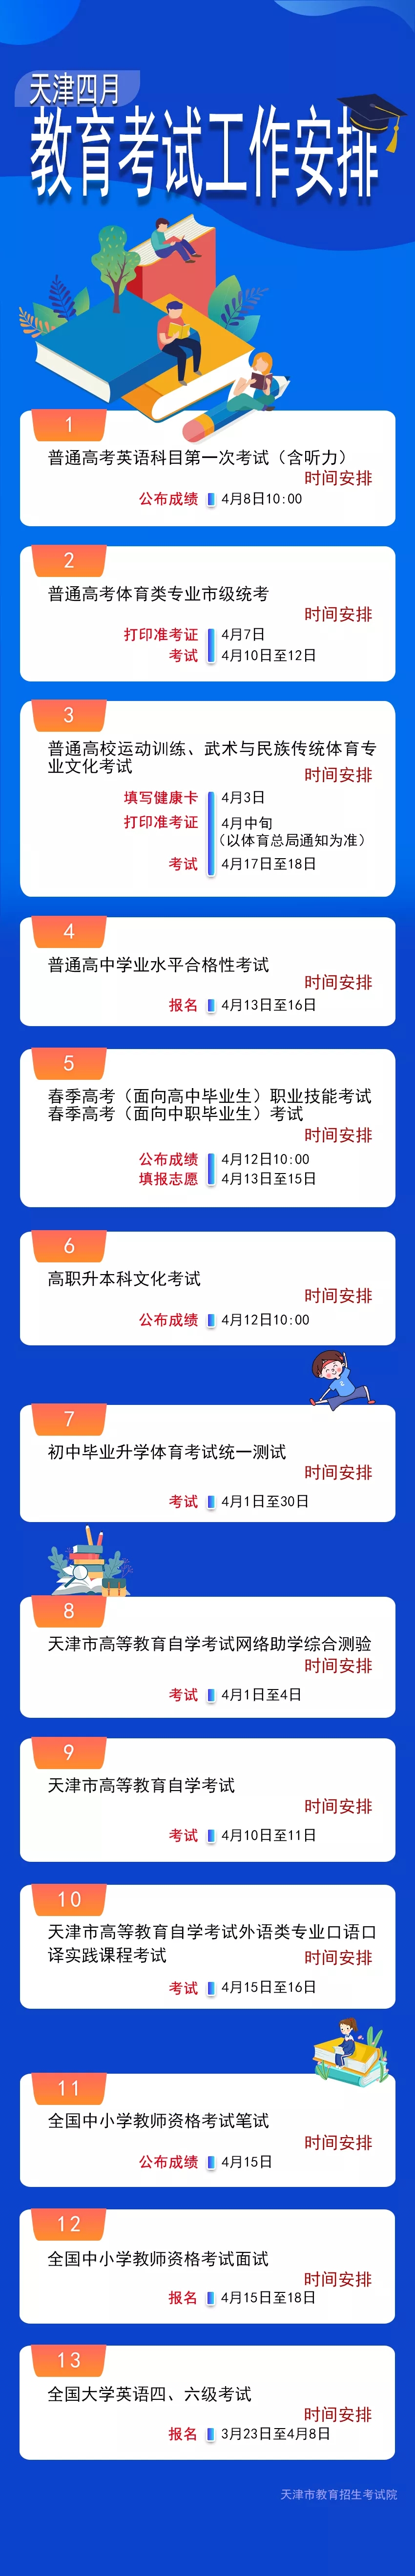 2021天津专升本文化考试成绩查询时间